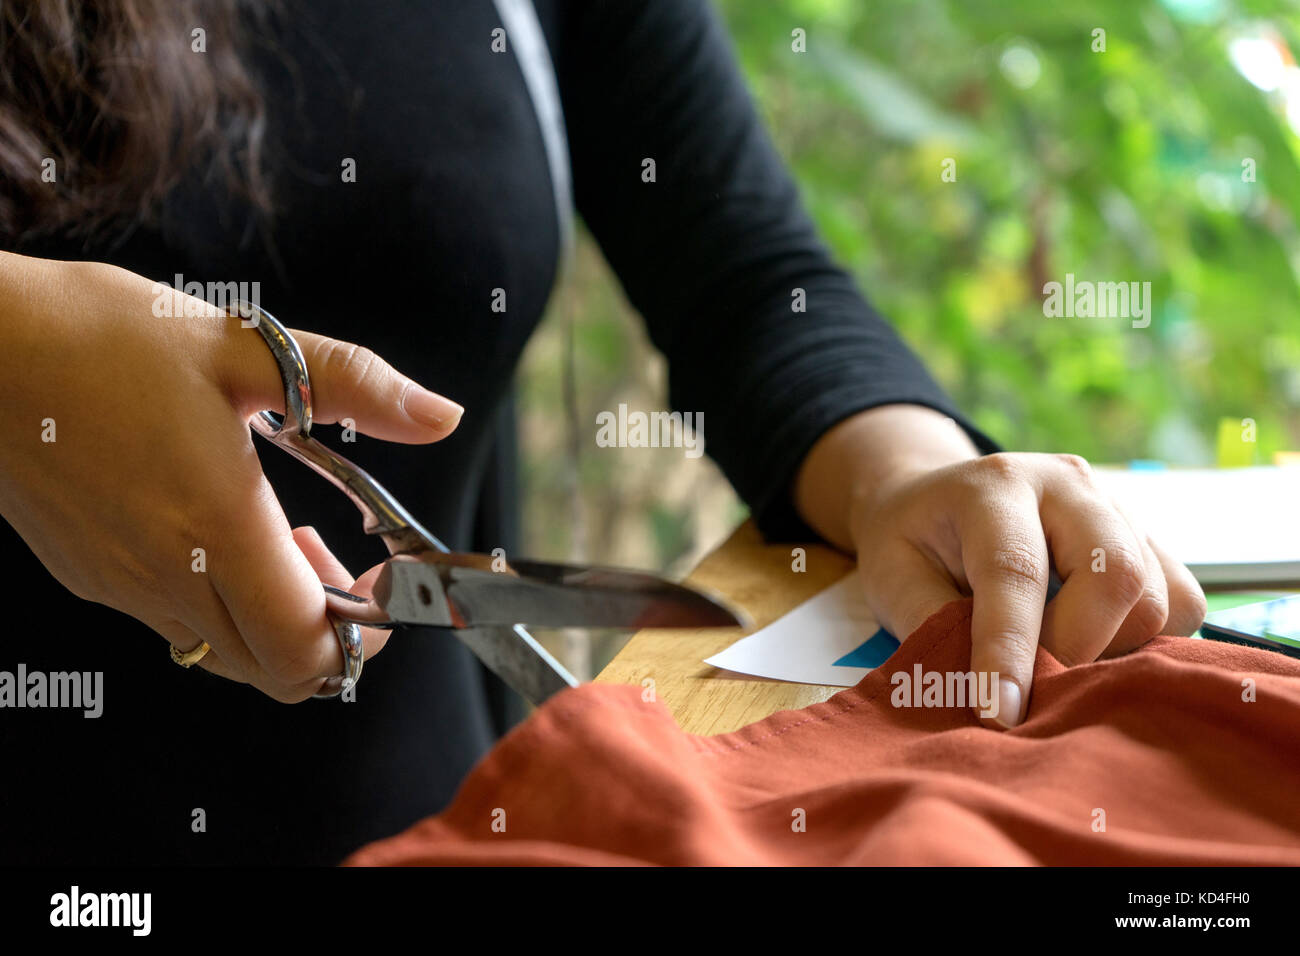 Jeune créateur de mode de travail avec chiffon de tissu sur la table en bois près de la porte de l'arbre vert Banque D'Images